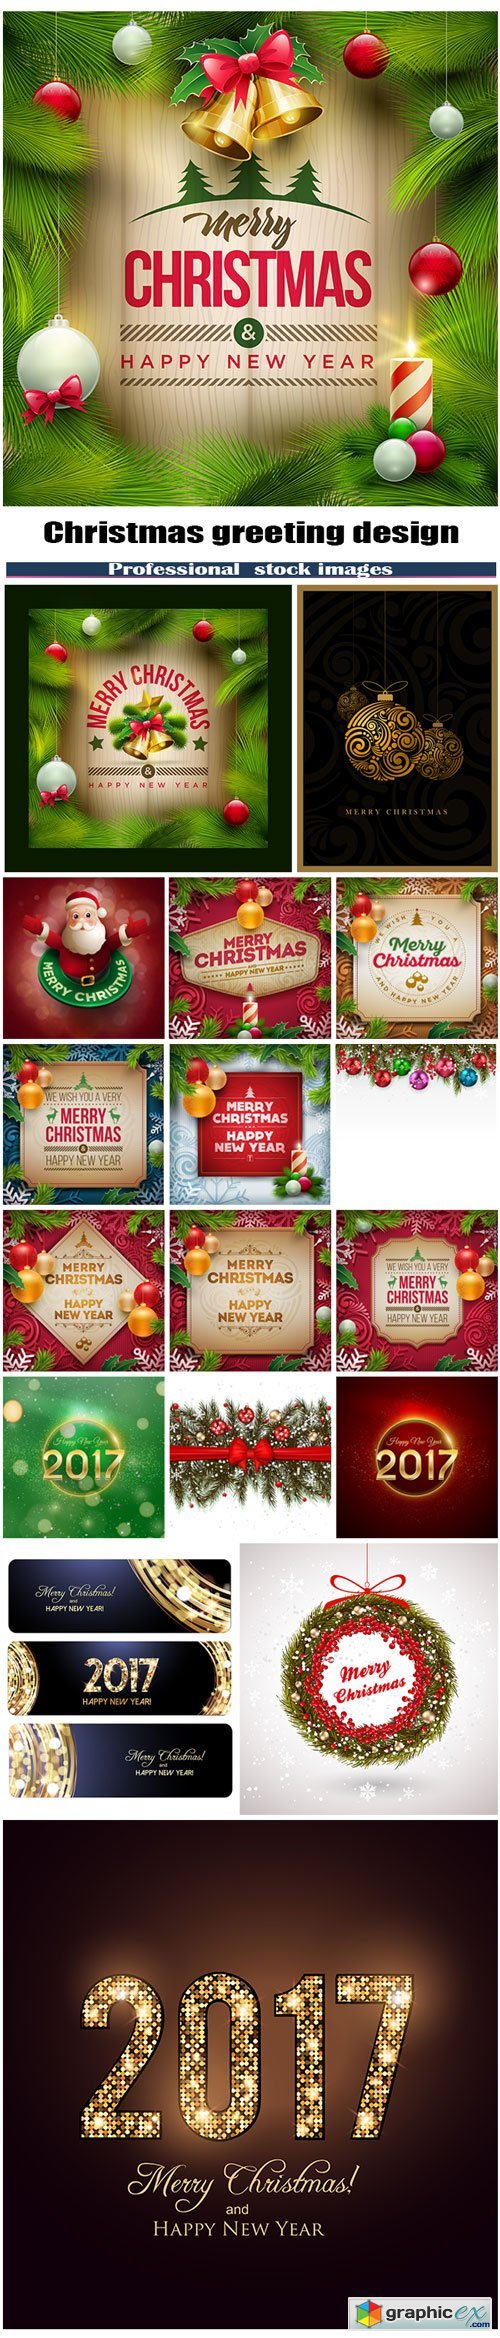 Christmas greeting design